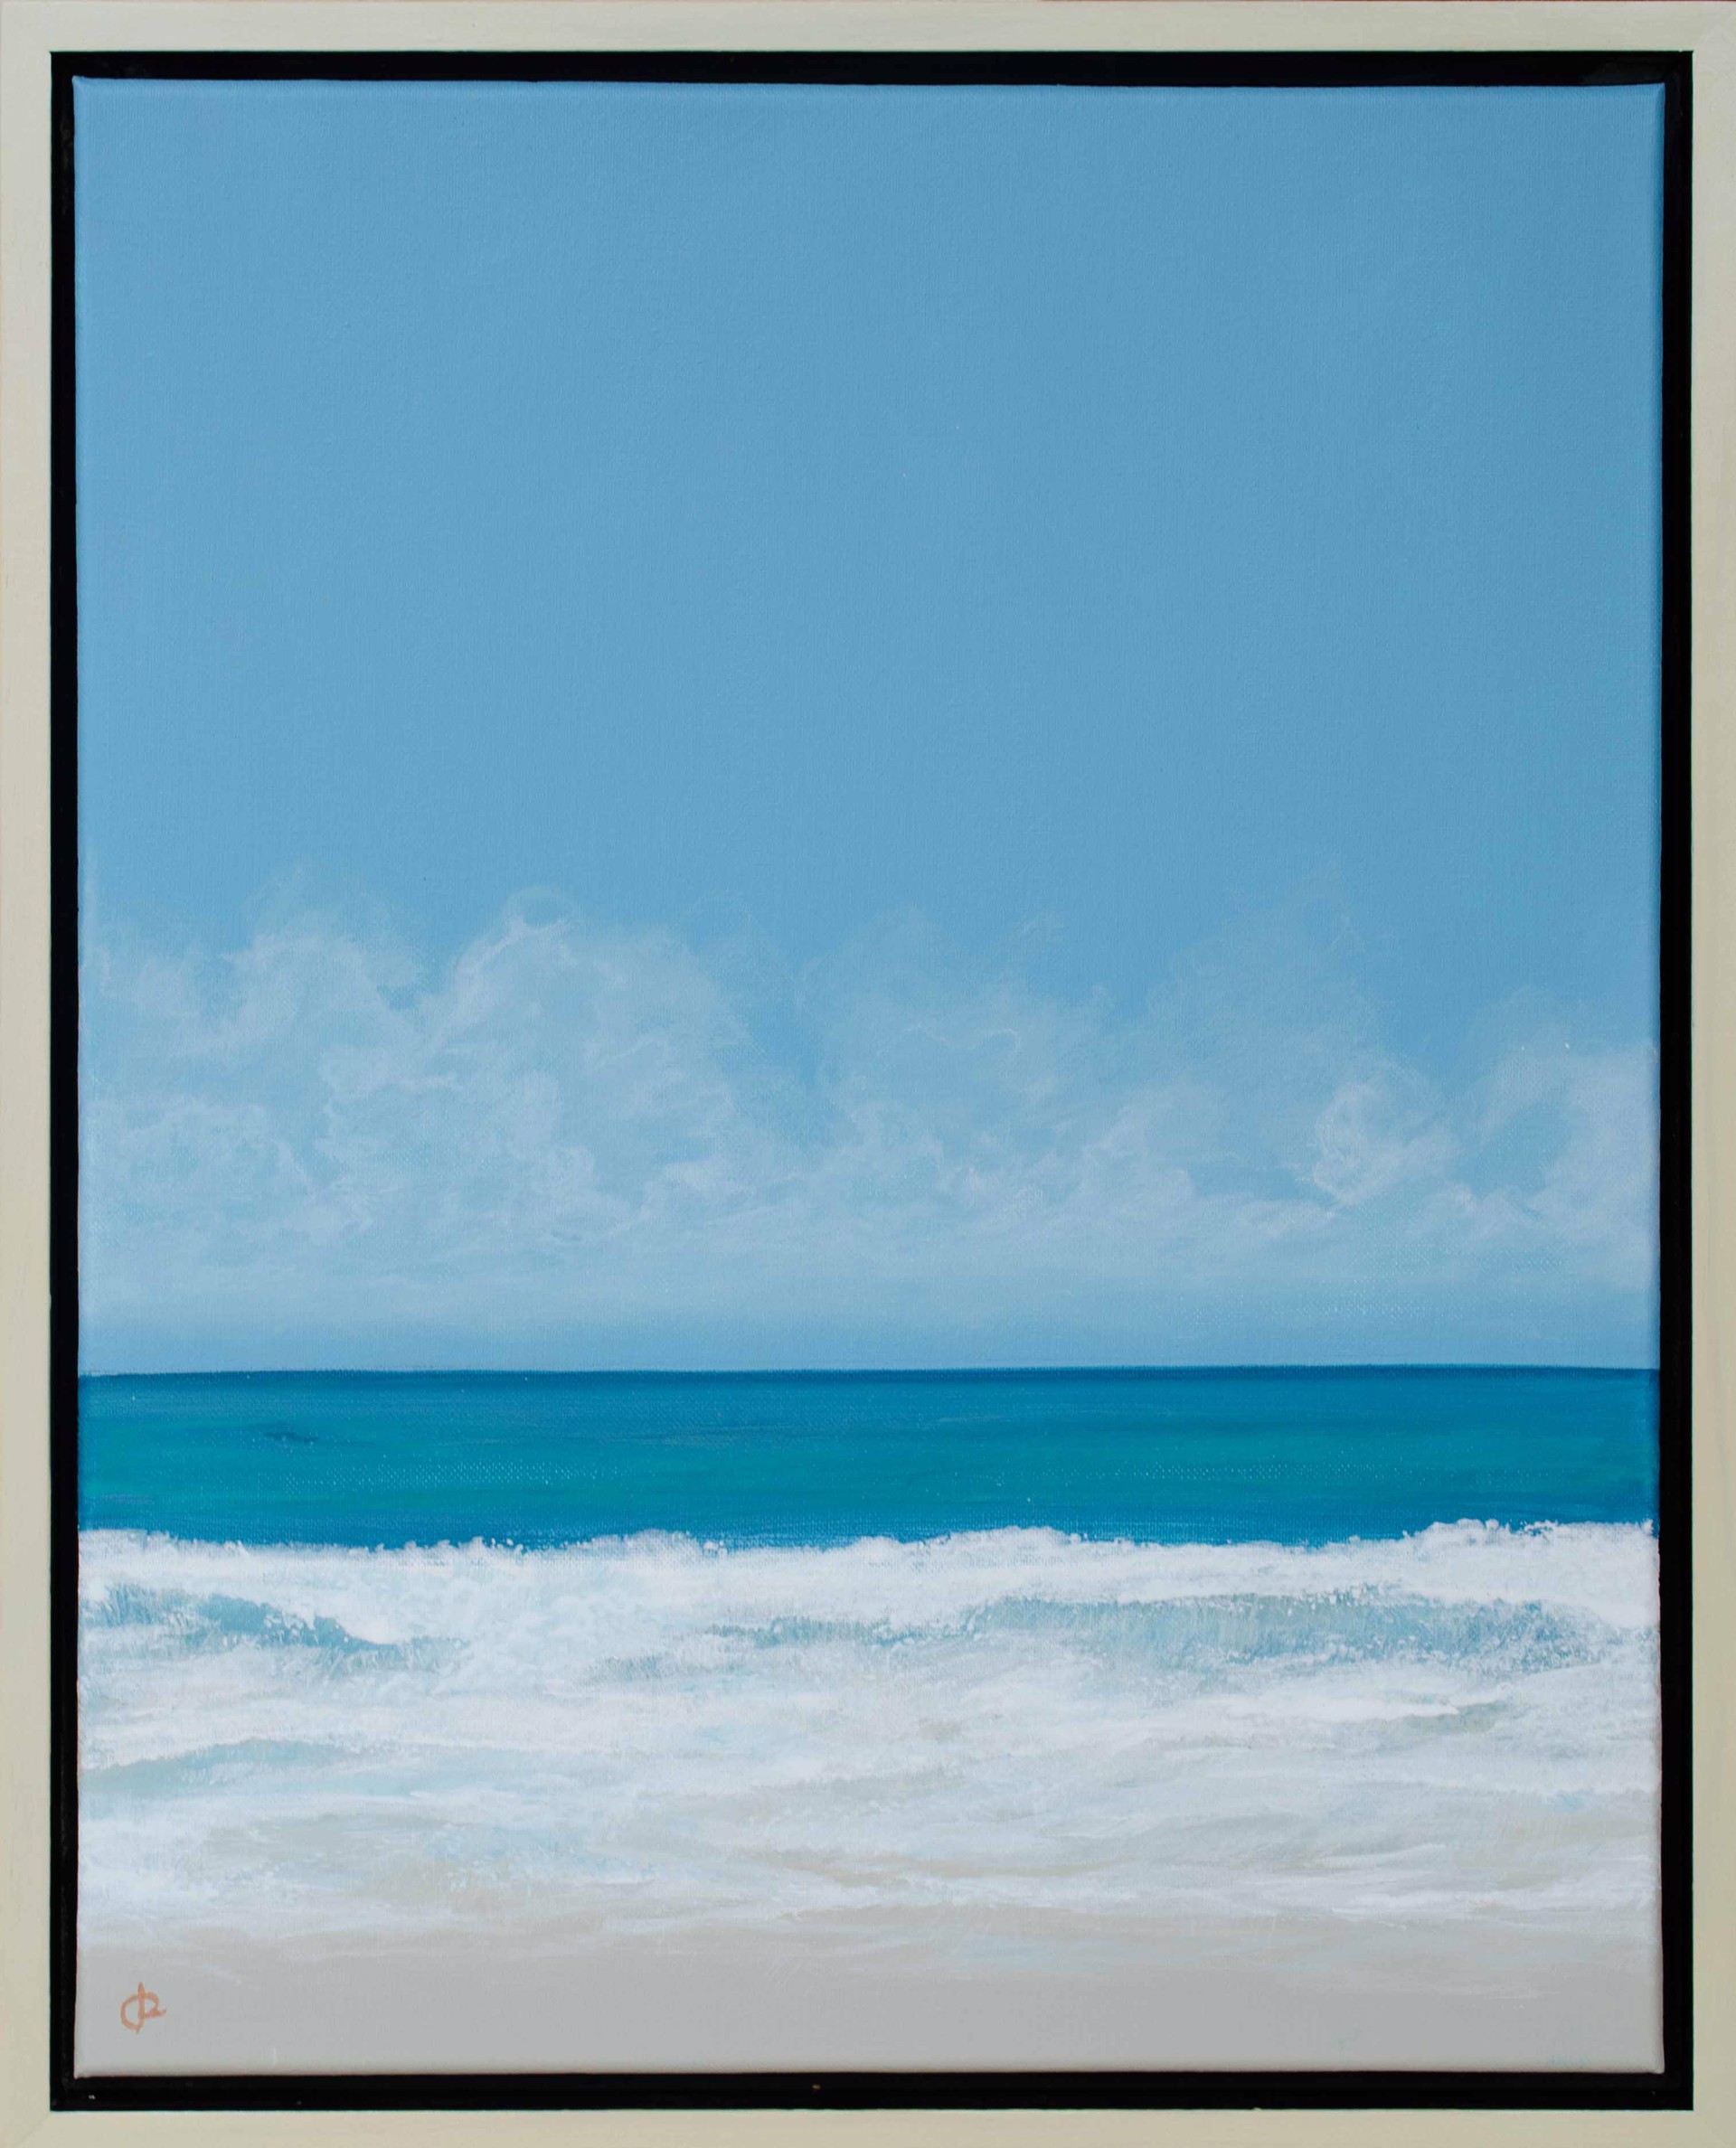 Surf Break II by Peter Laughton